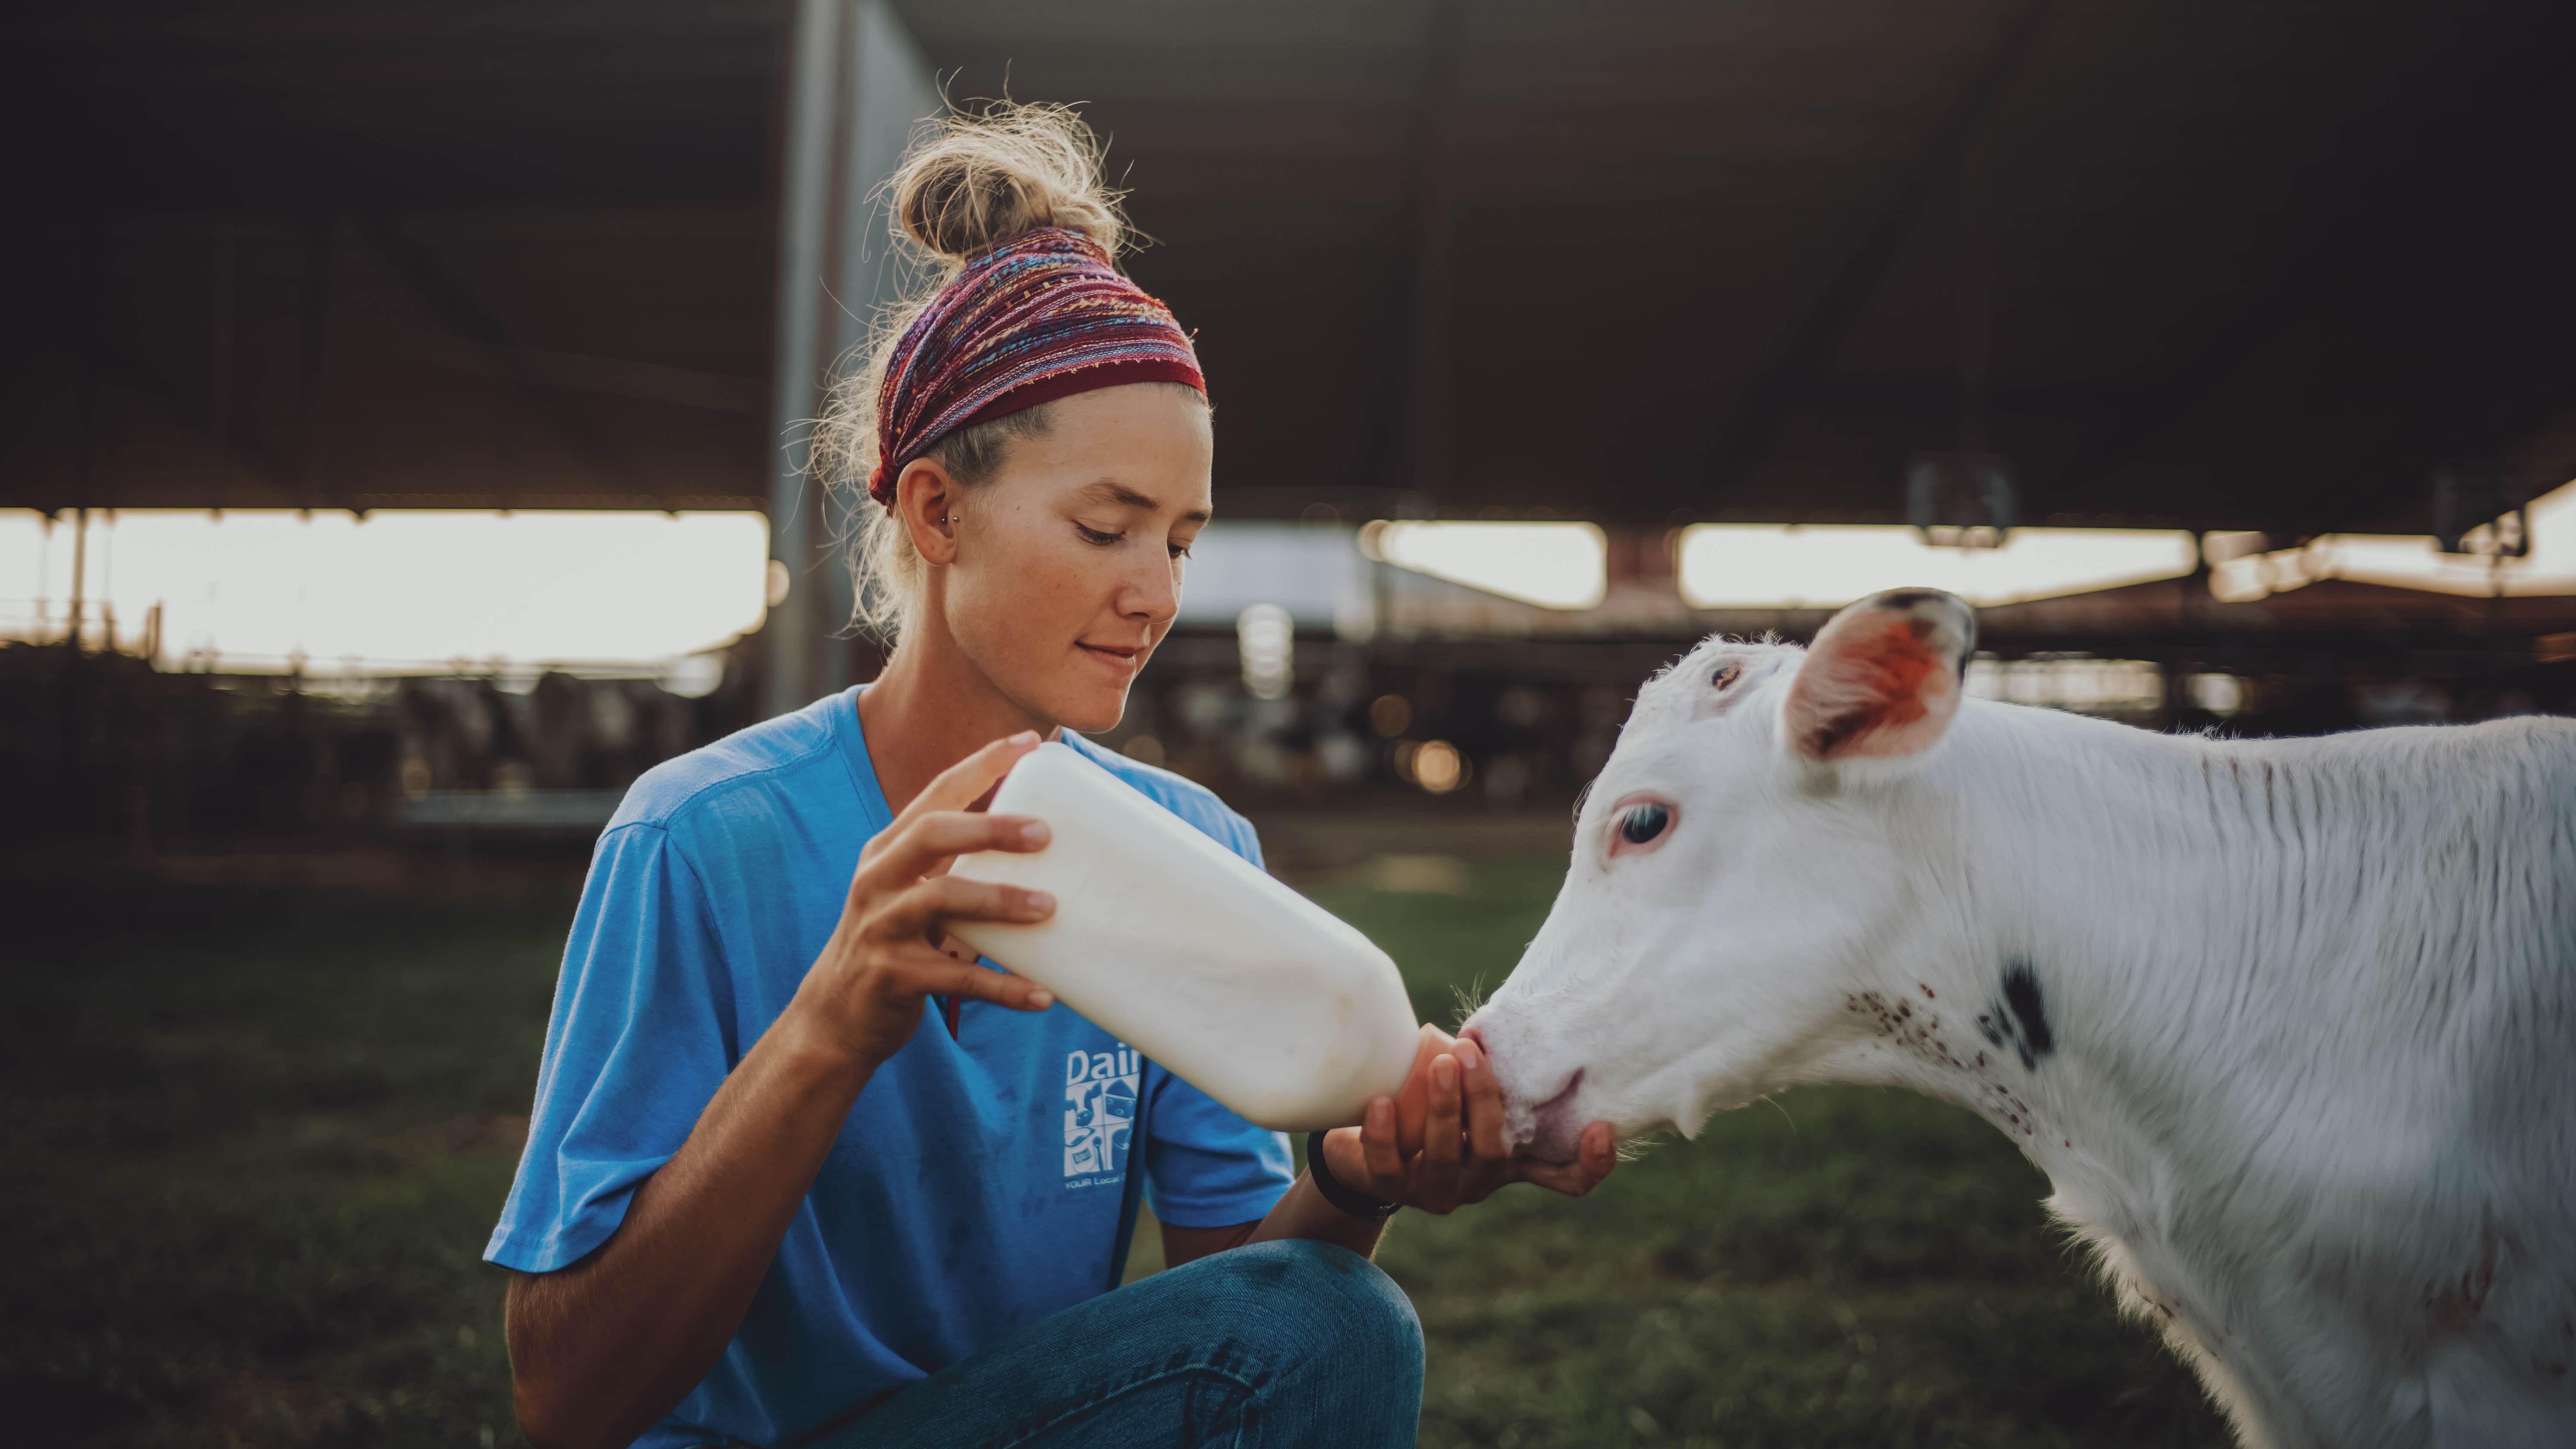 Feeding a Calf